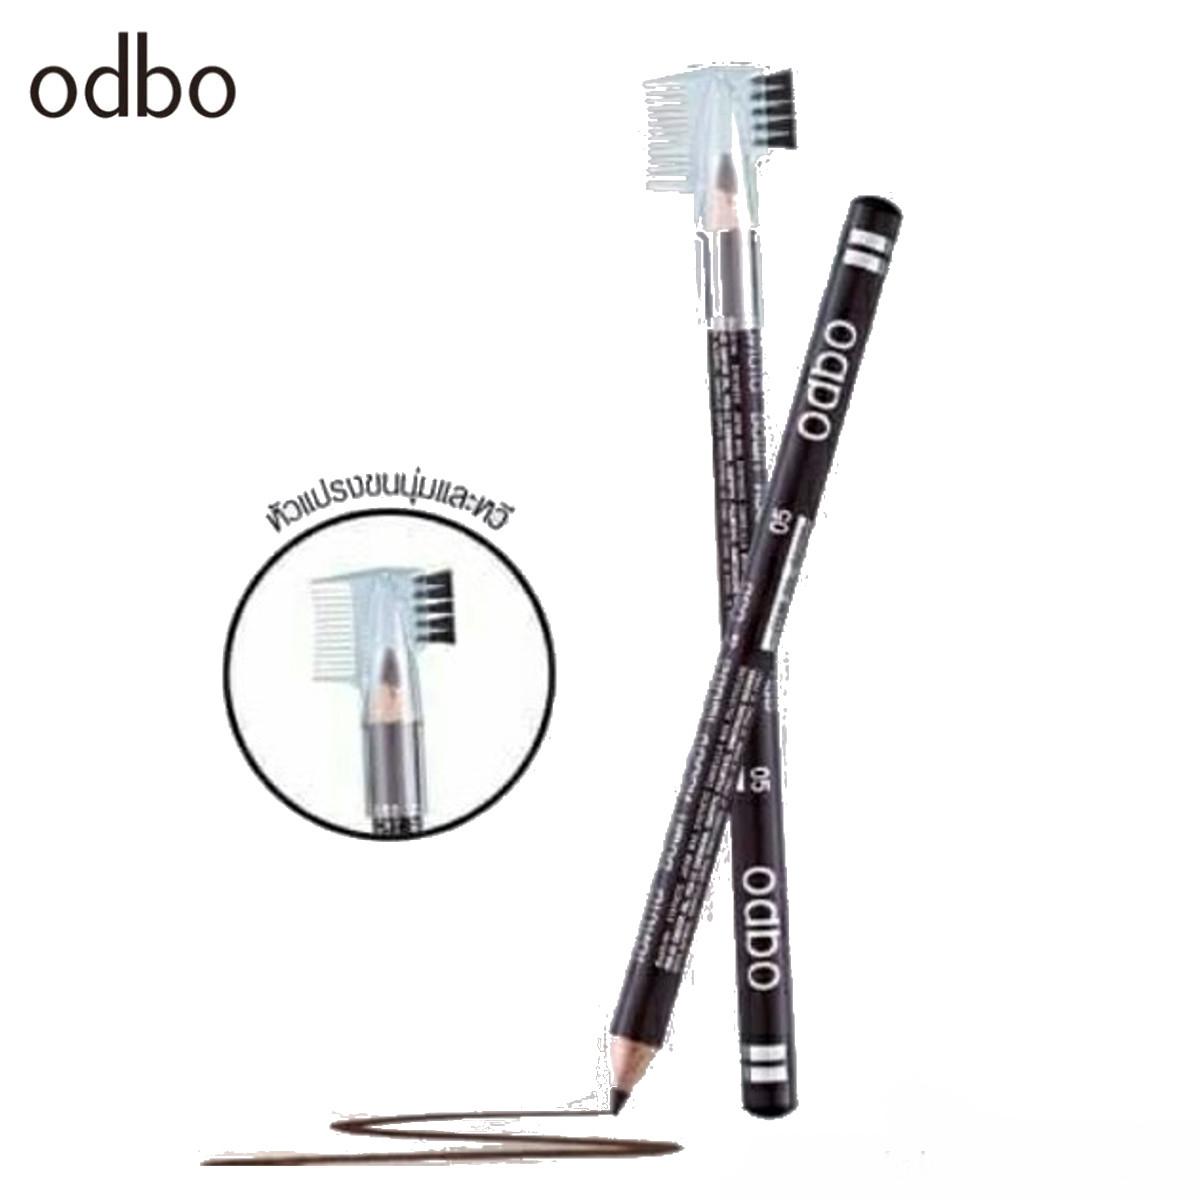 (ยกแพค*12แท่ง) New!!! ODBO ดินสอเขียนคิ้ว Soft drawing Pencil&Brush (OD760)